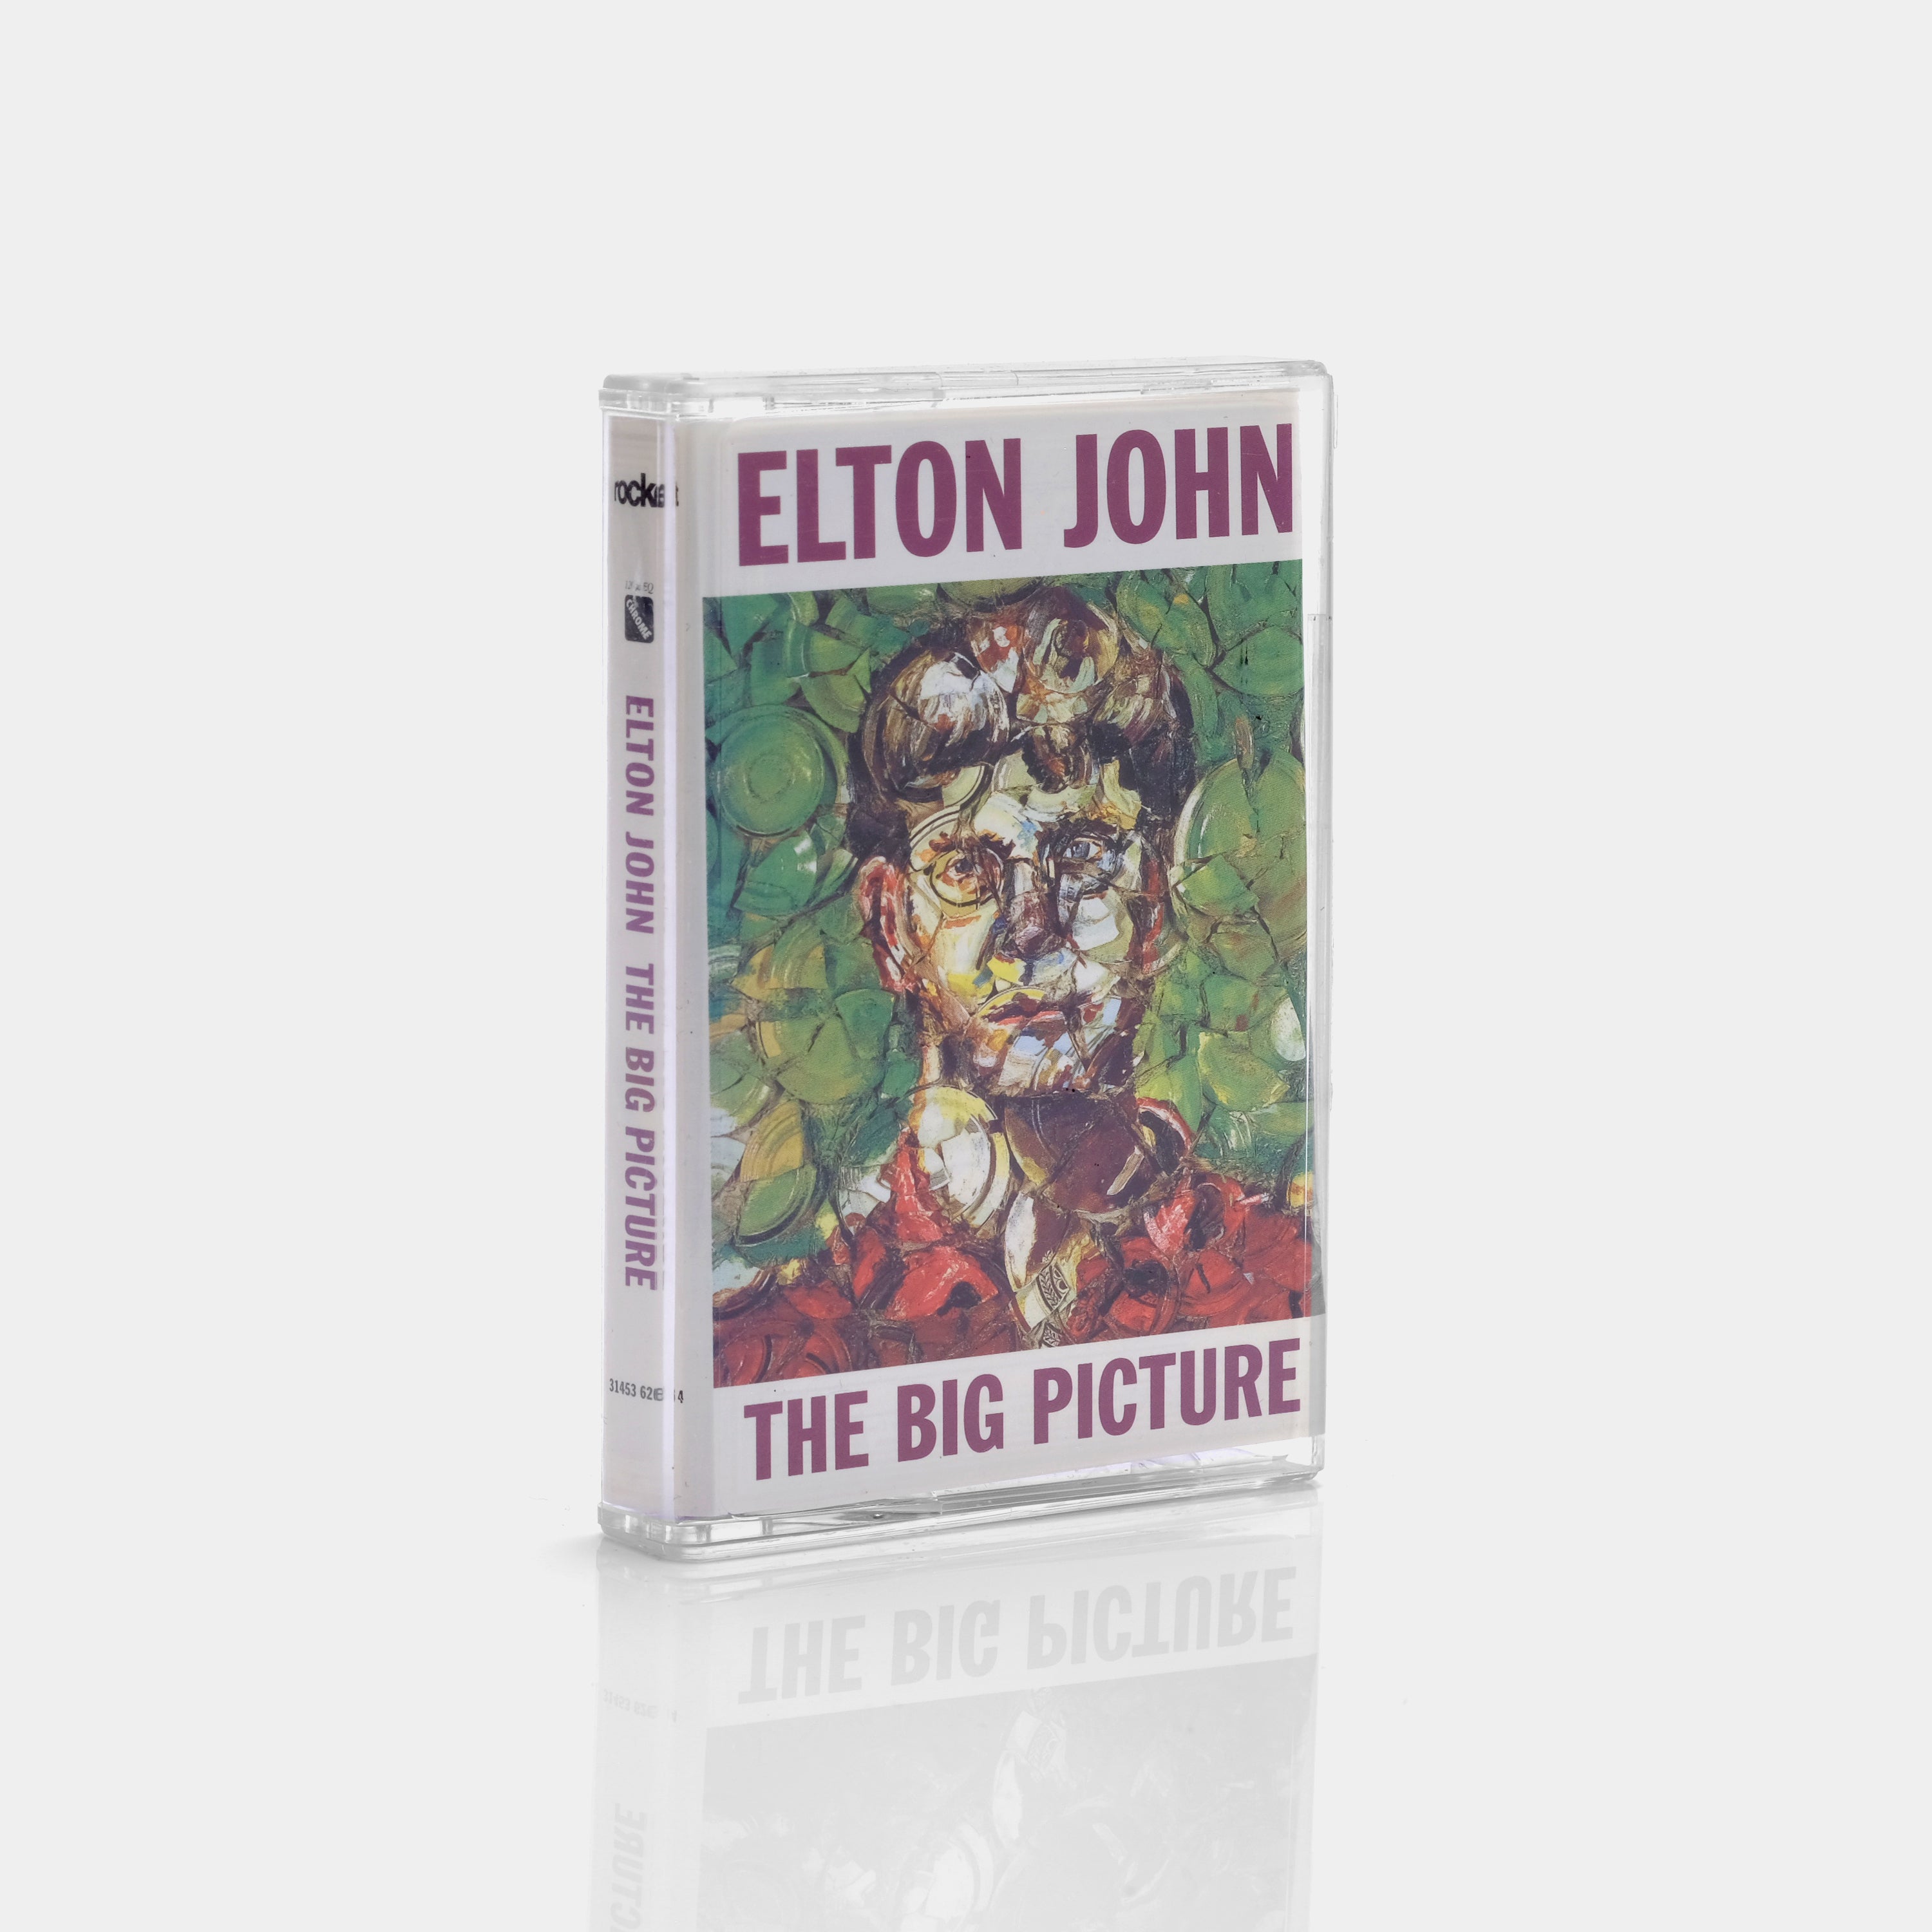 Elton John - The Big Picture Cassette Tape